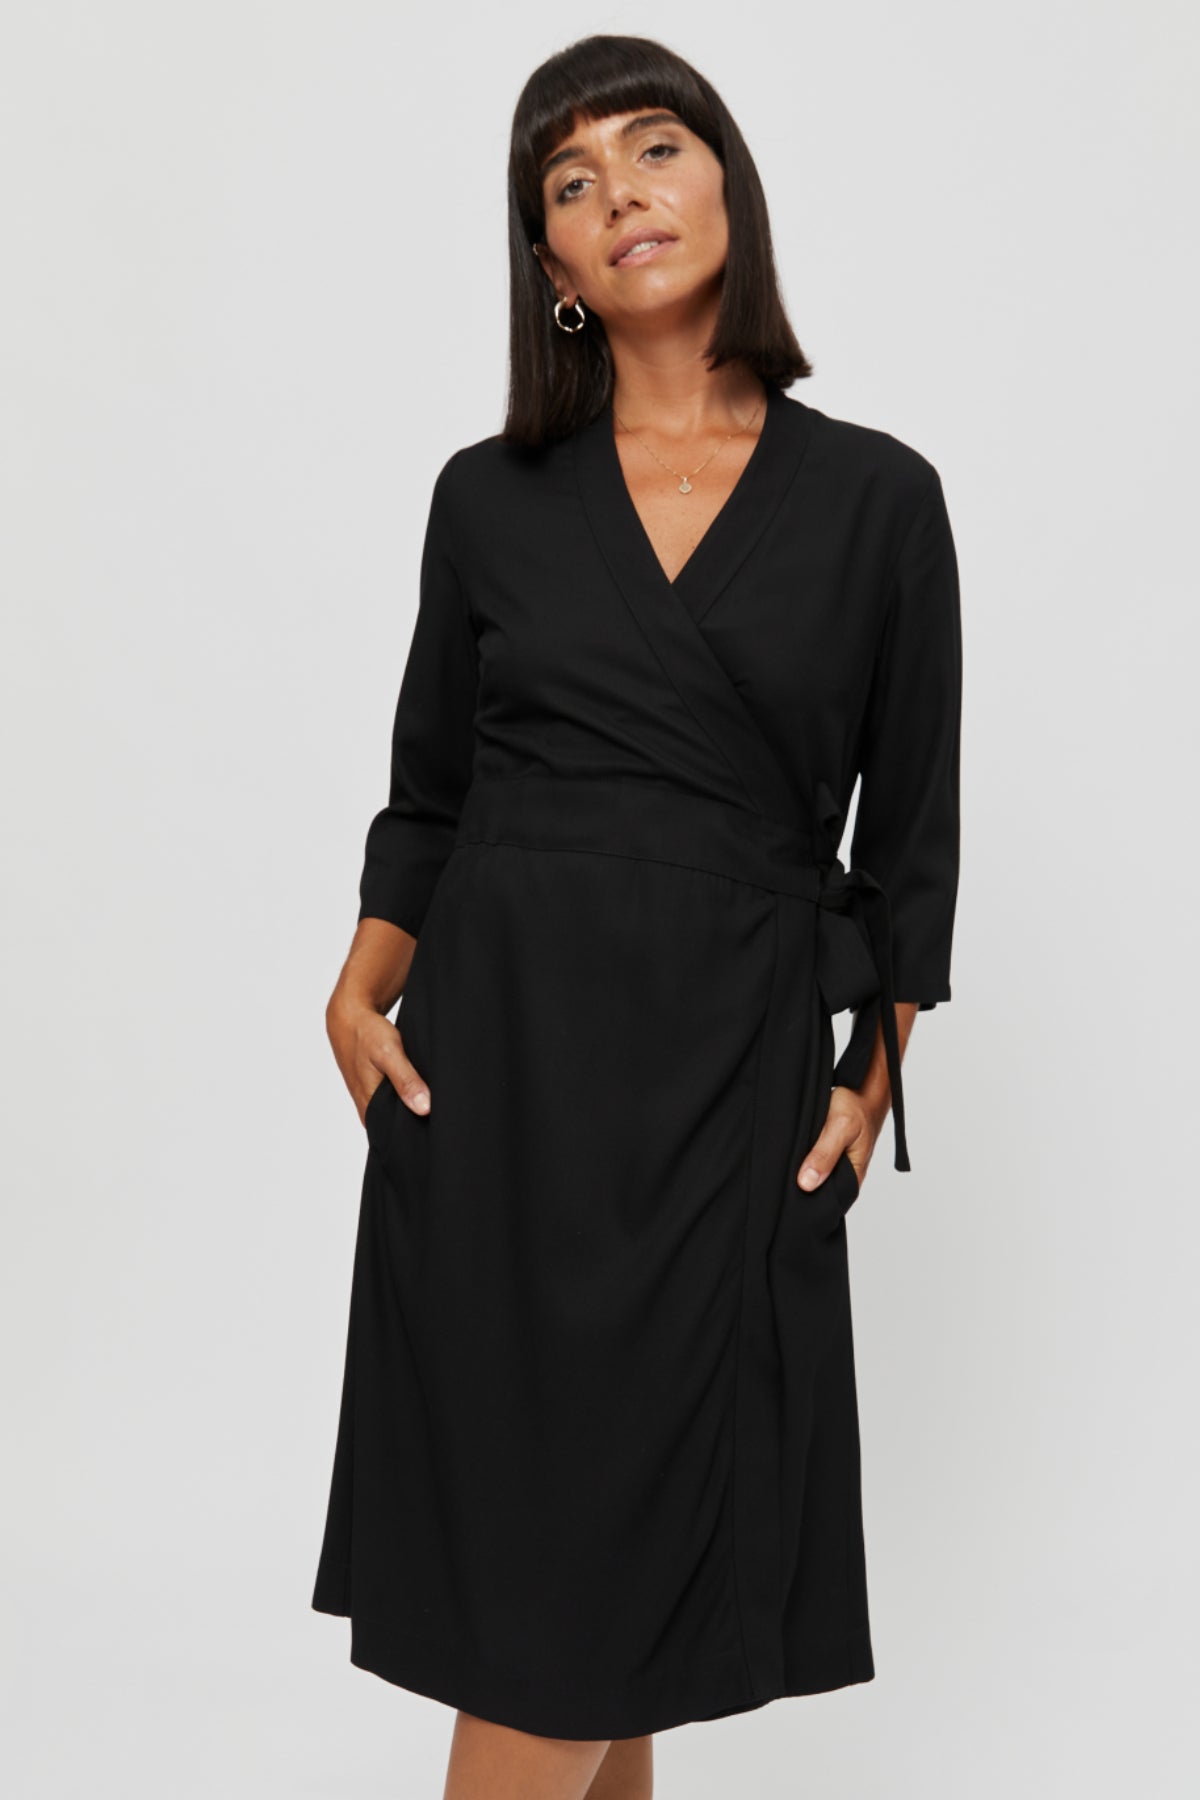 Black wrap dress Sandra made of 100% viscose by Ayani